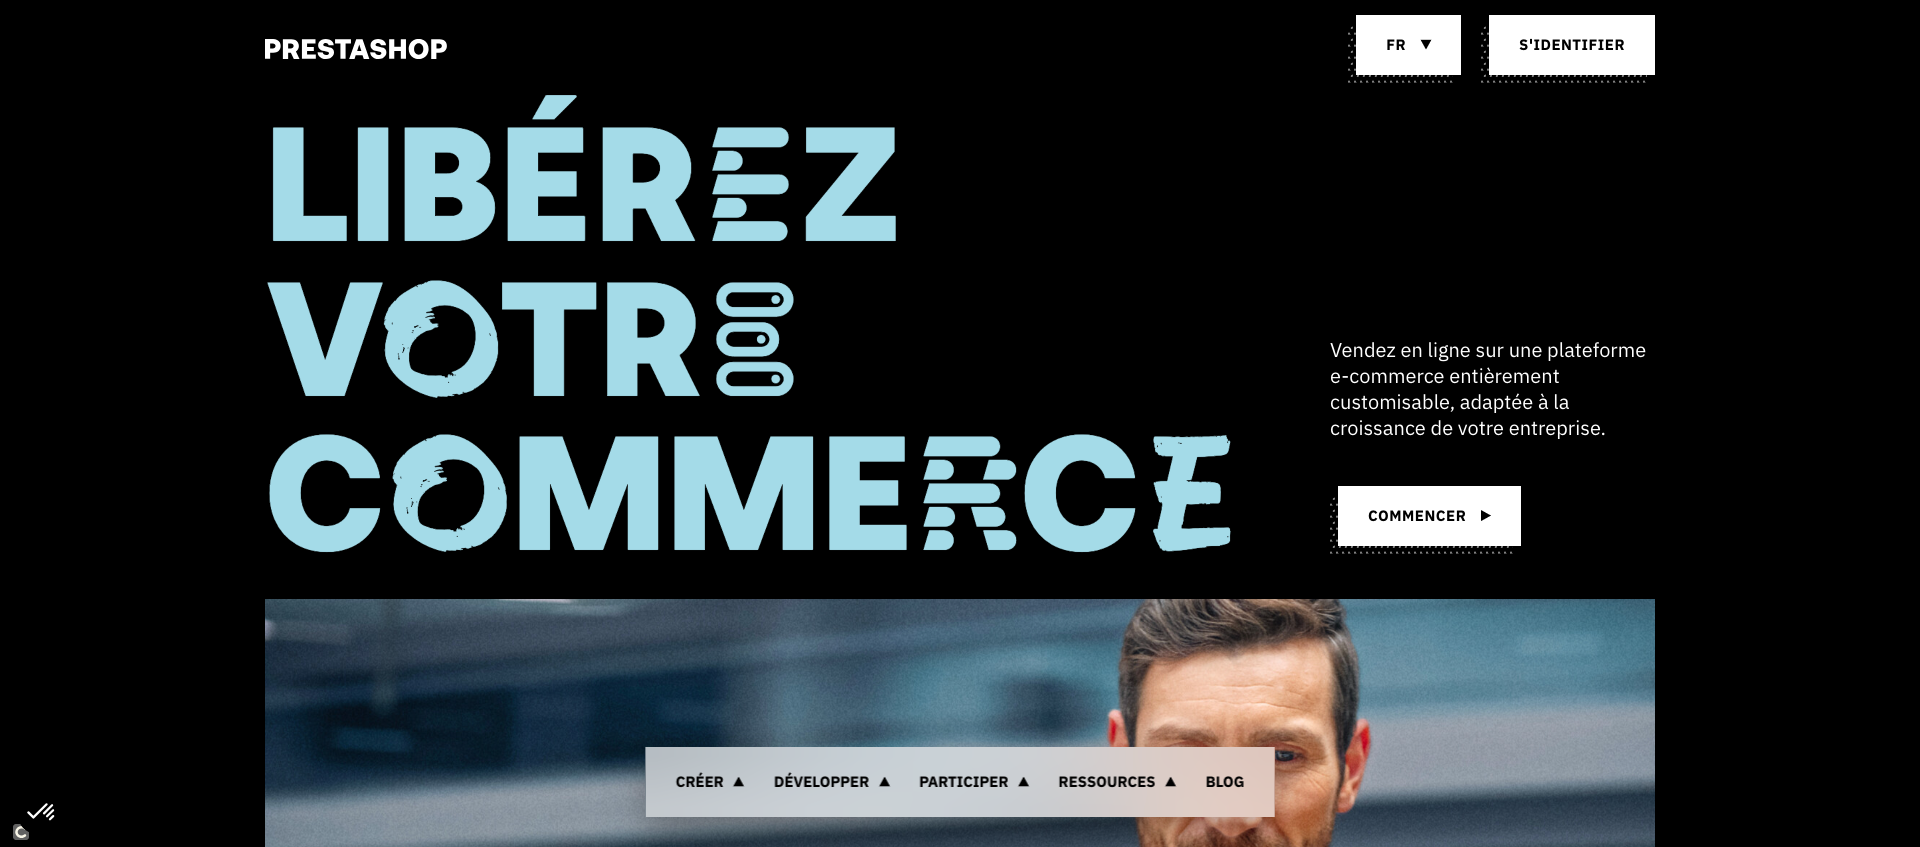 Prestashop, solution française de création de site e-commerce